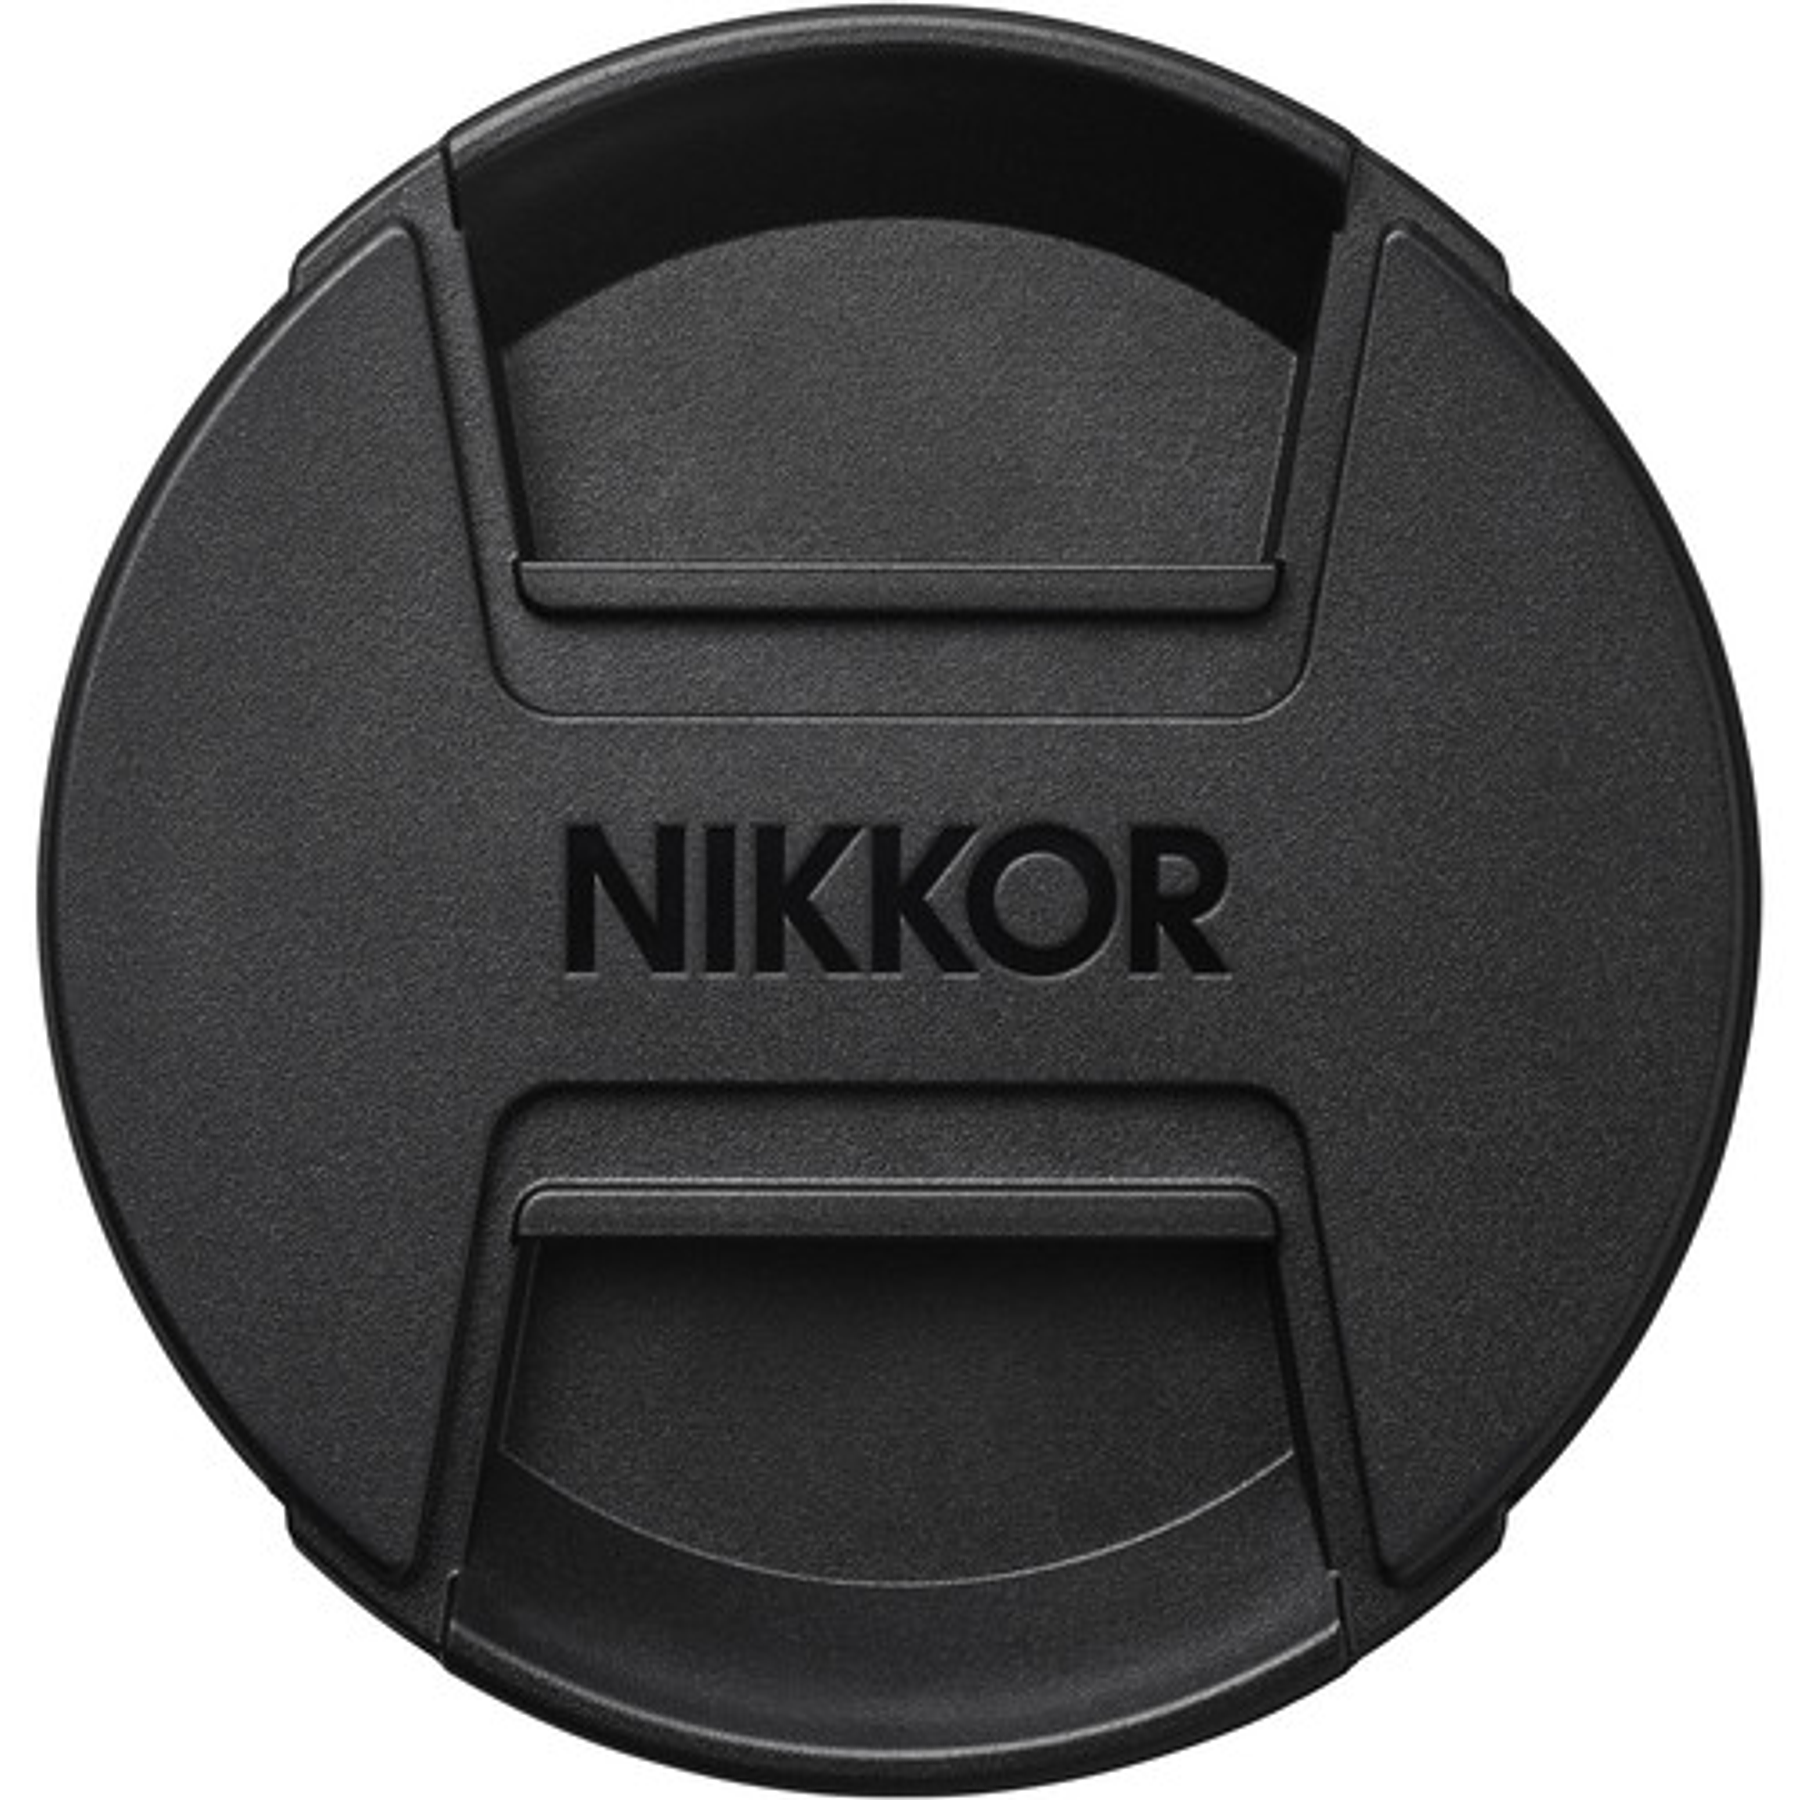 Nikon NIKKOR Z 24mm f/1.8 S